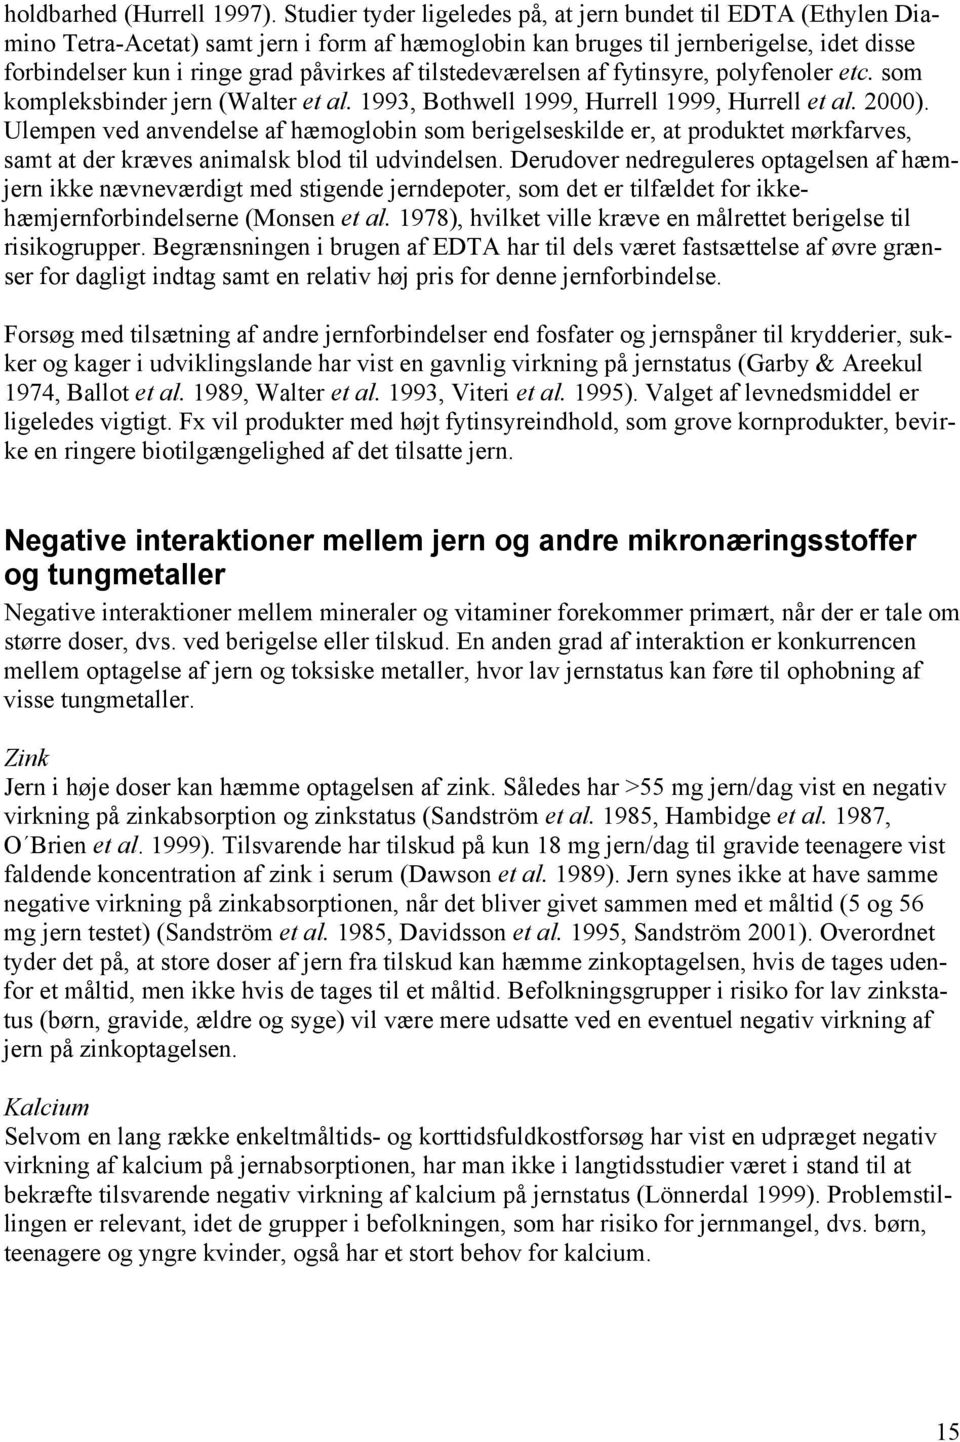 Jern bør forsyningen i den danske befolkning forbedres? - PDF Free ...